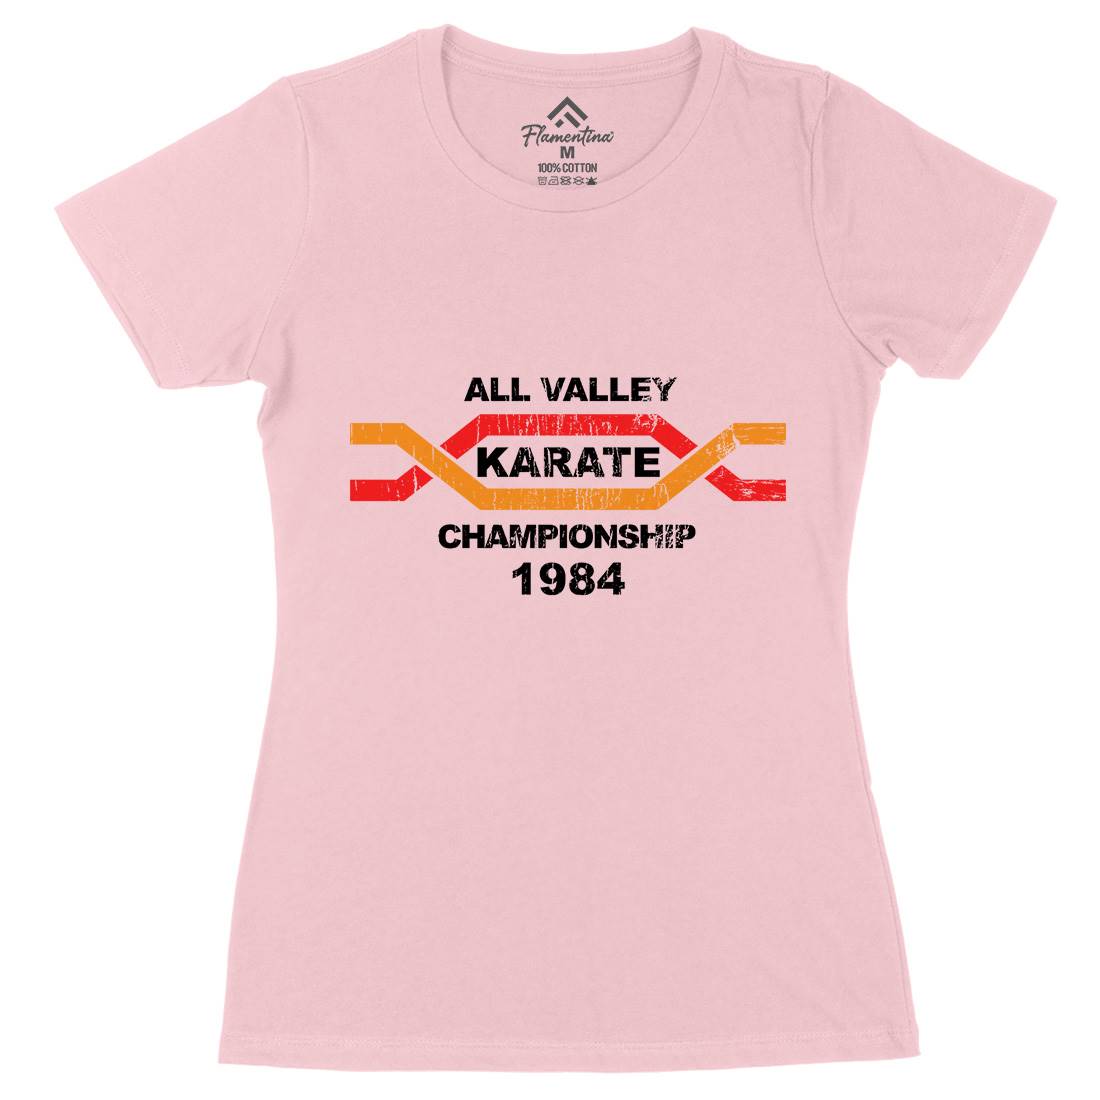 All Valley Womens Organic Crew Neck T-Shirt Sport D251